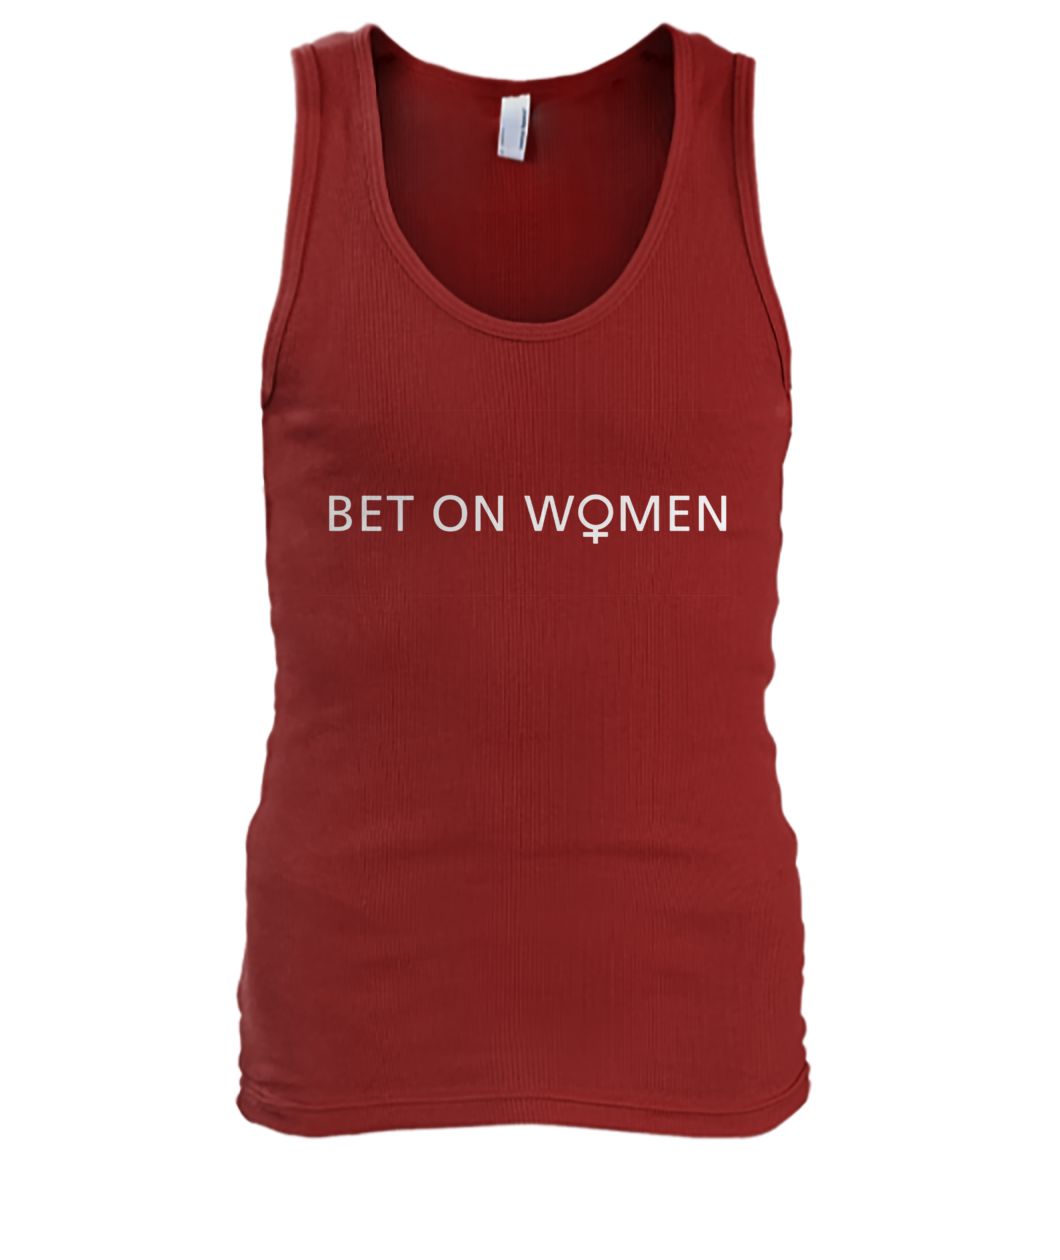 Bet on women men's tank top